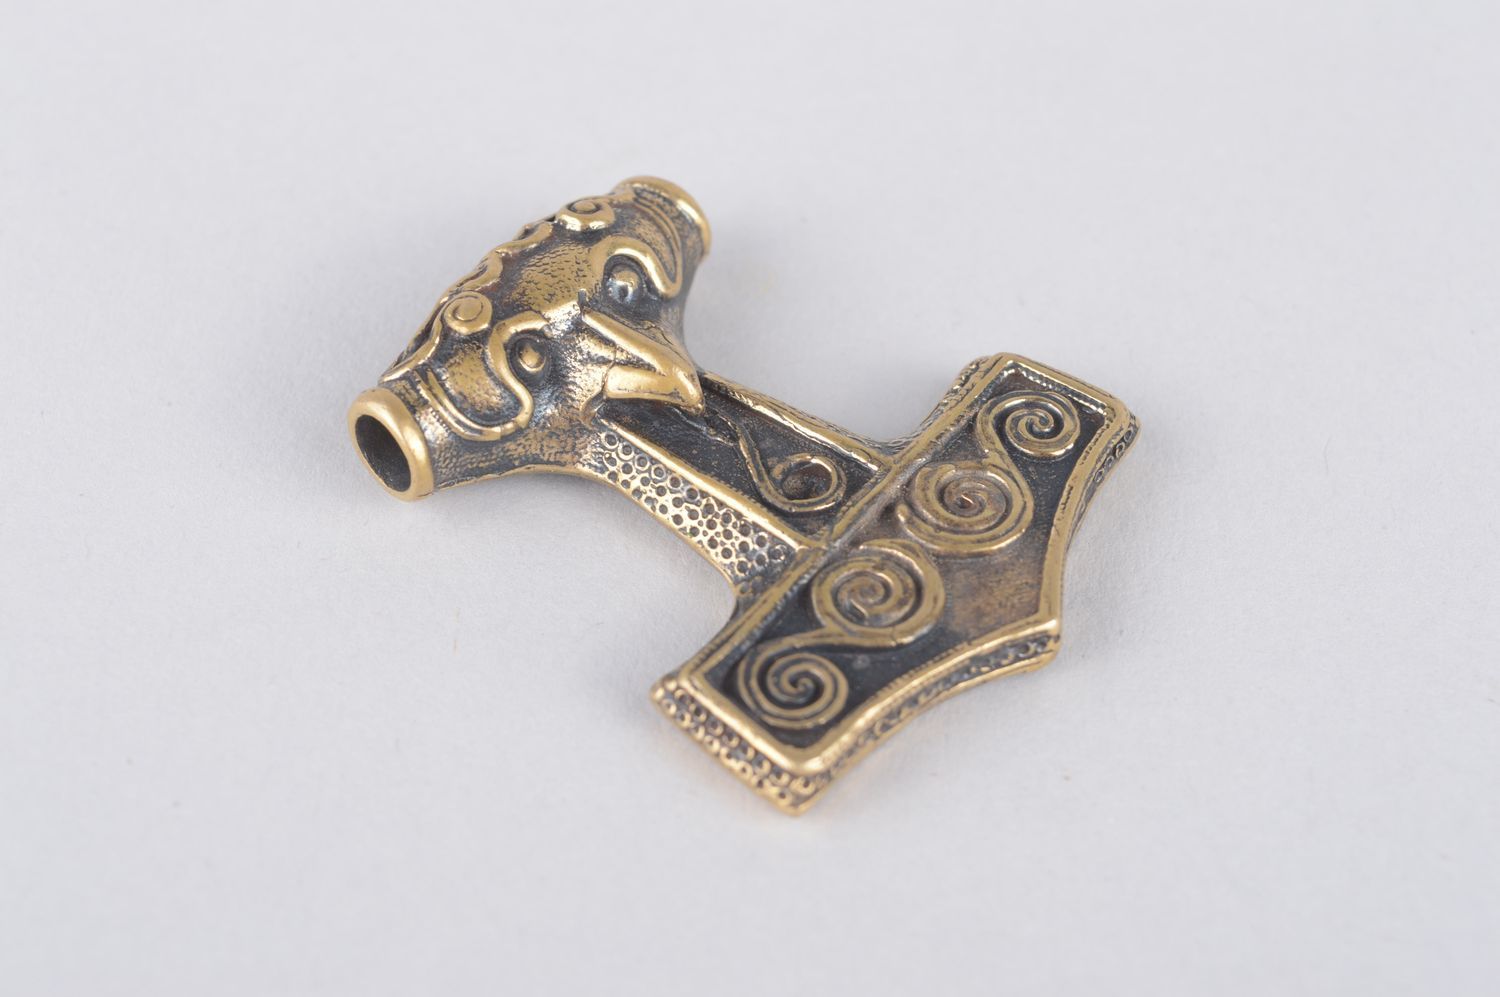 Bronze pendant handmade bronze jewelry metal pendant on cord ethnic jewelry photo 3